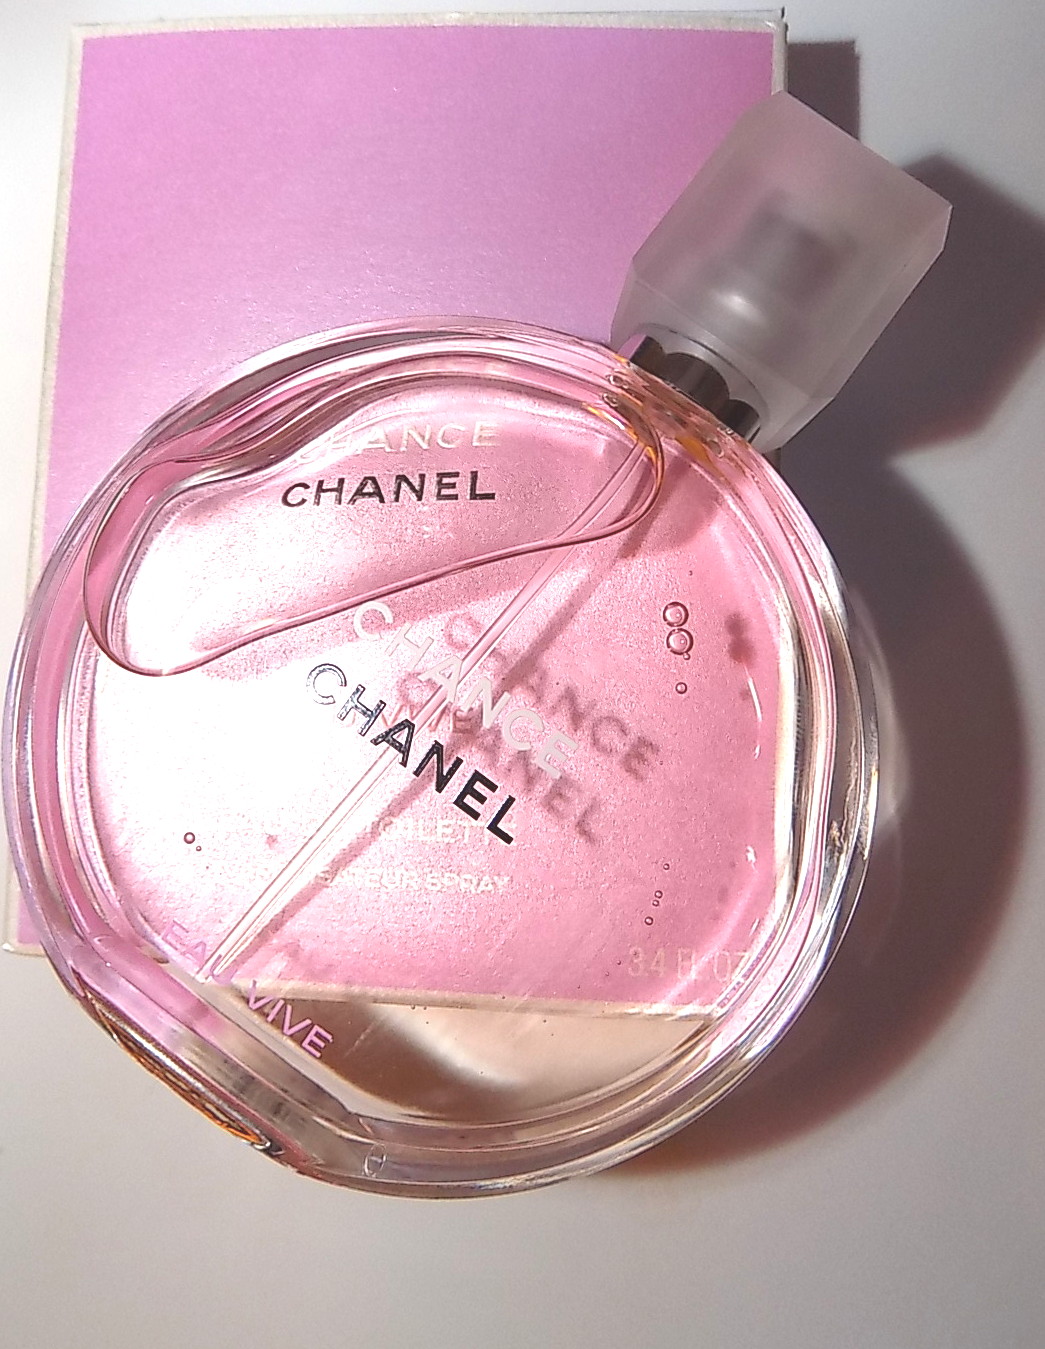 The Beauty Alchemist: Chanel Chance Eau Vive